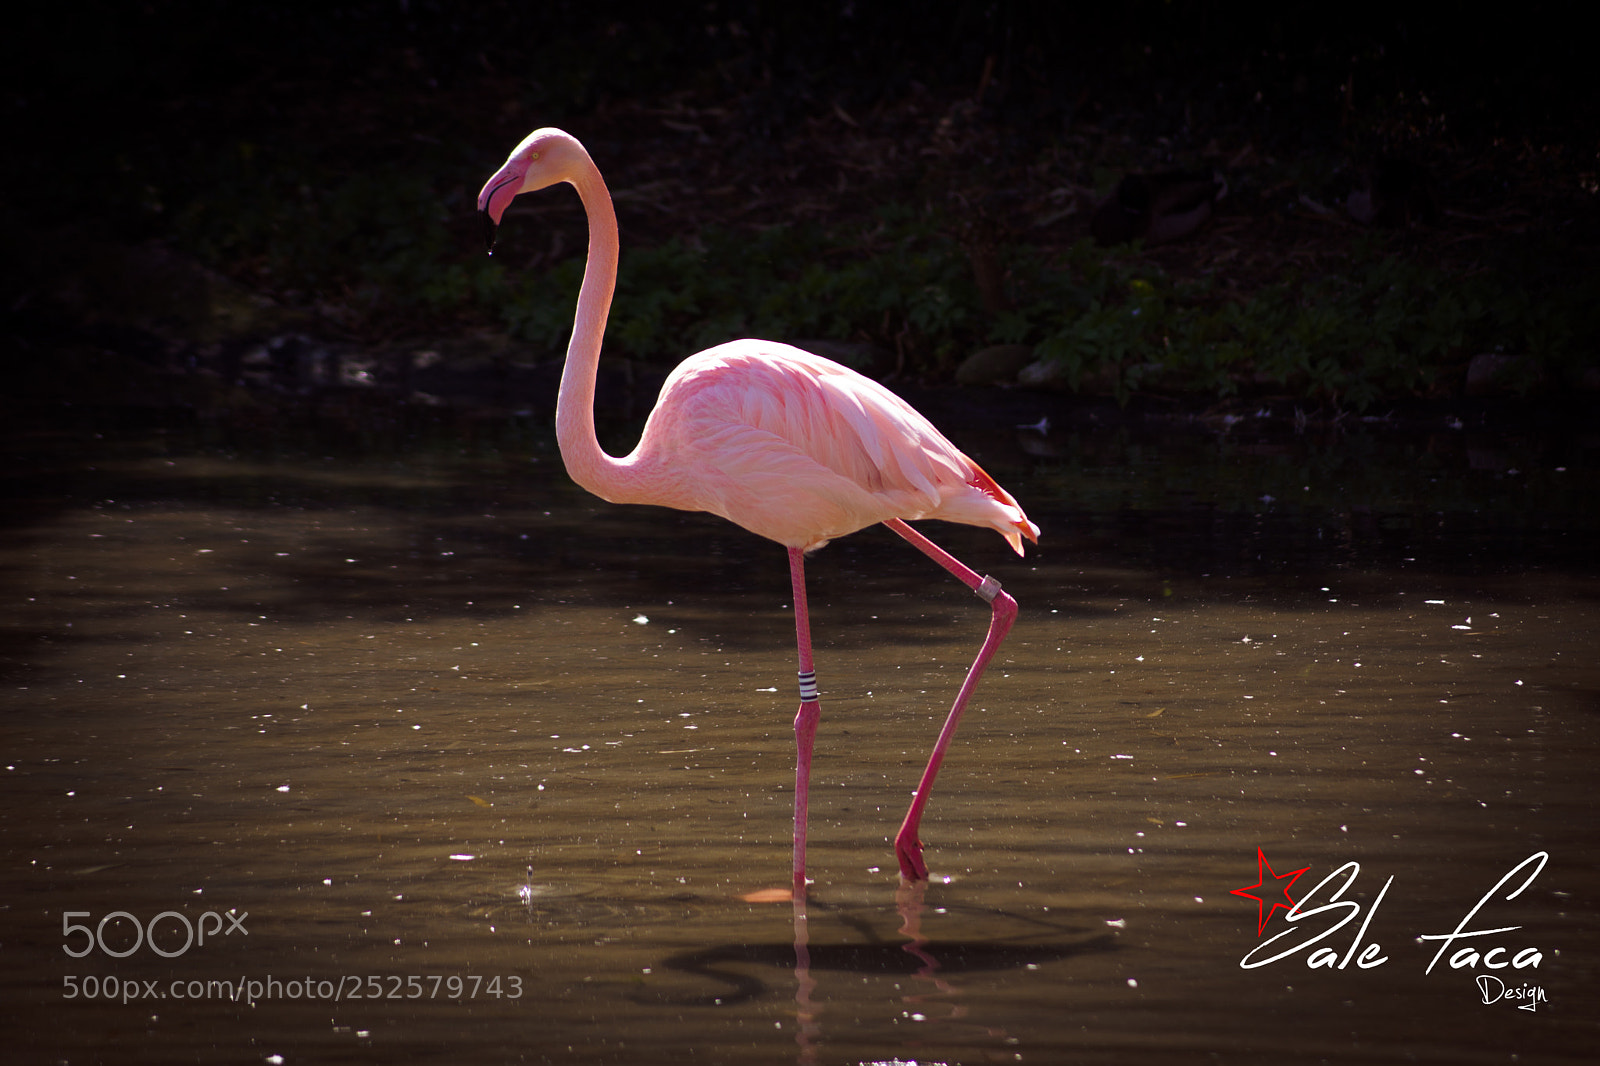 Sony SLT-A65 (SLT-A65V) sample photo. Flamingo photography